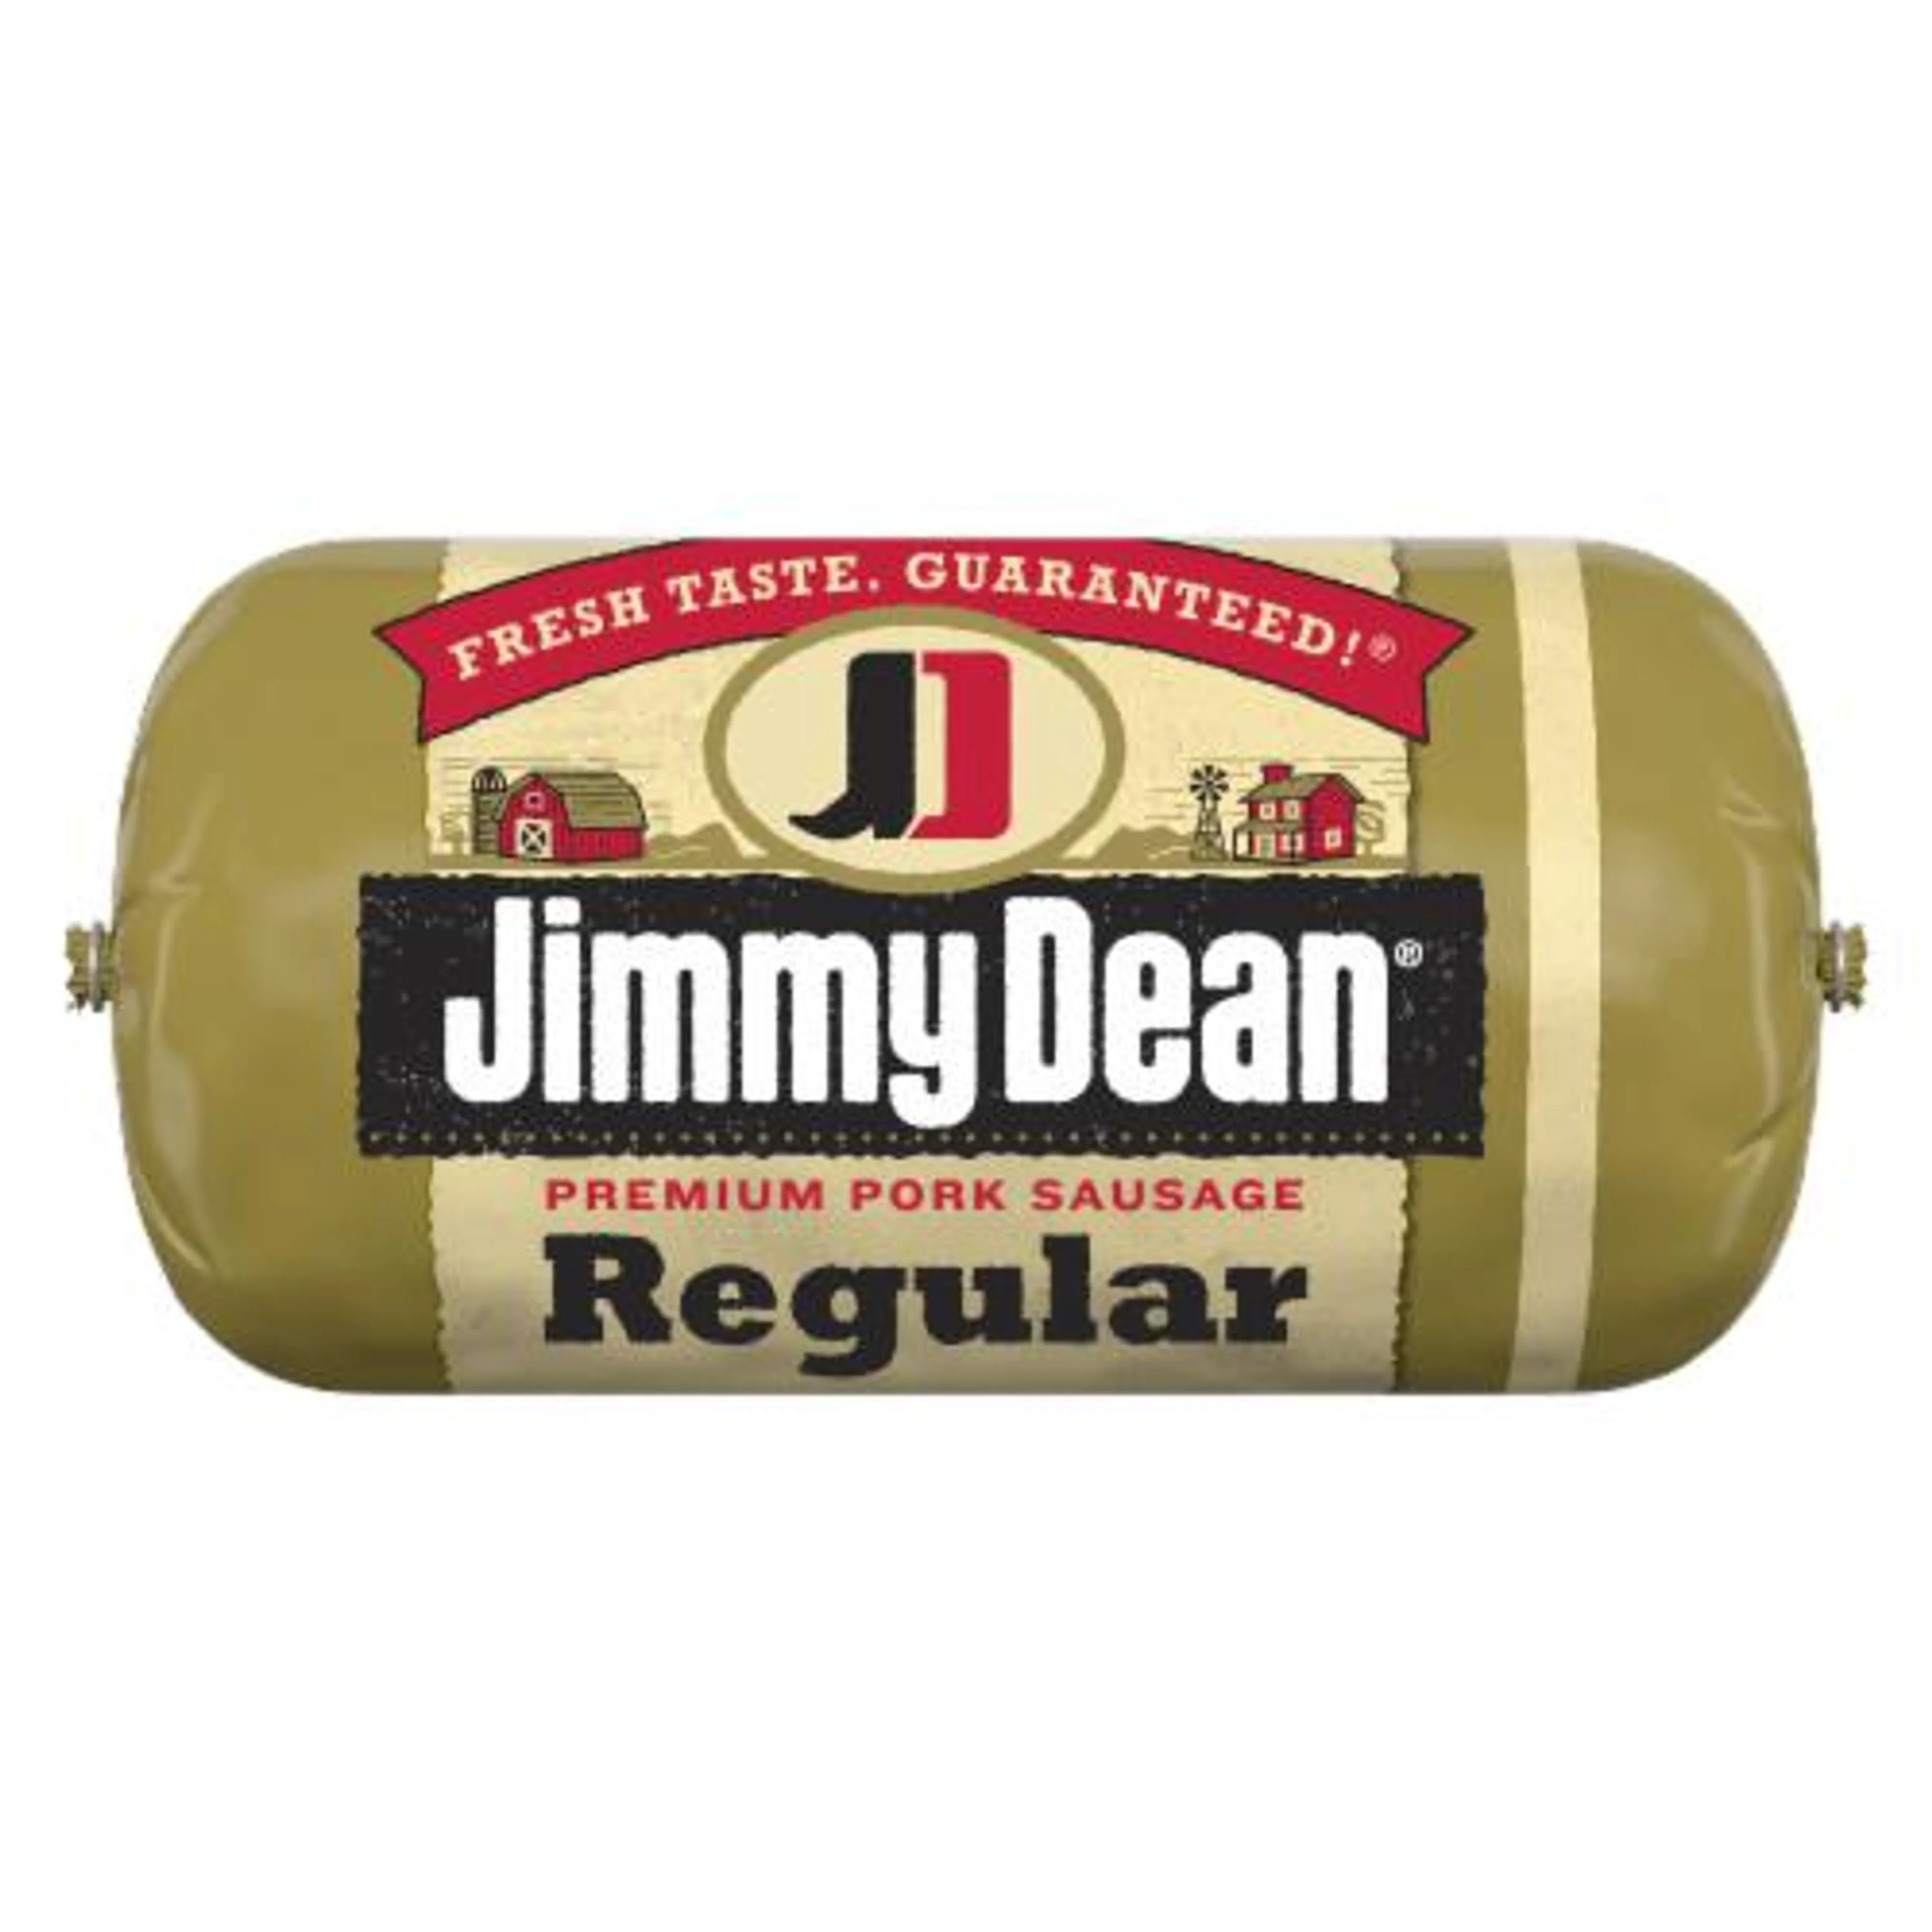 Jimmy Dean® Regular Premium Pork Sausage Roll